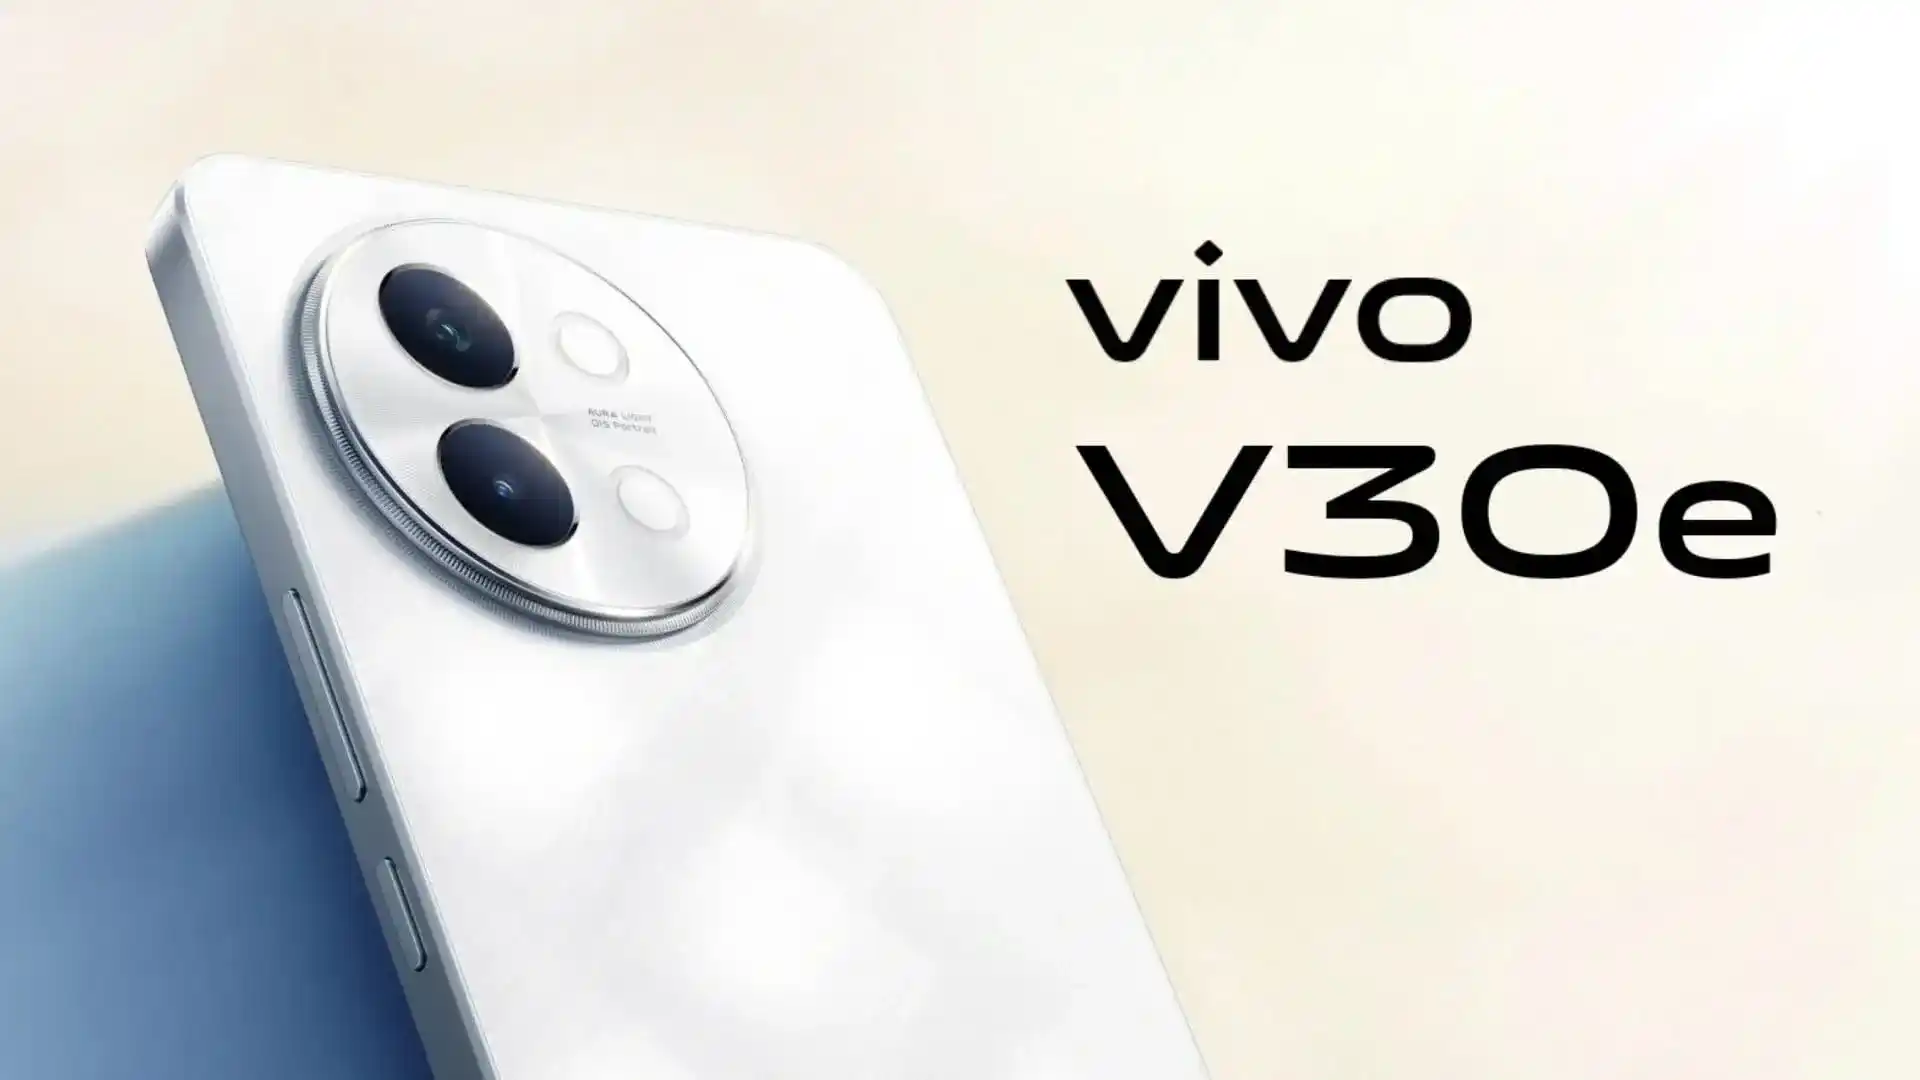 Un initié a révélé l'apparence et les caractéristiques du nouveau smartphone Vivo V30e.